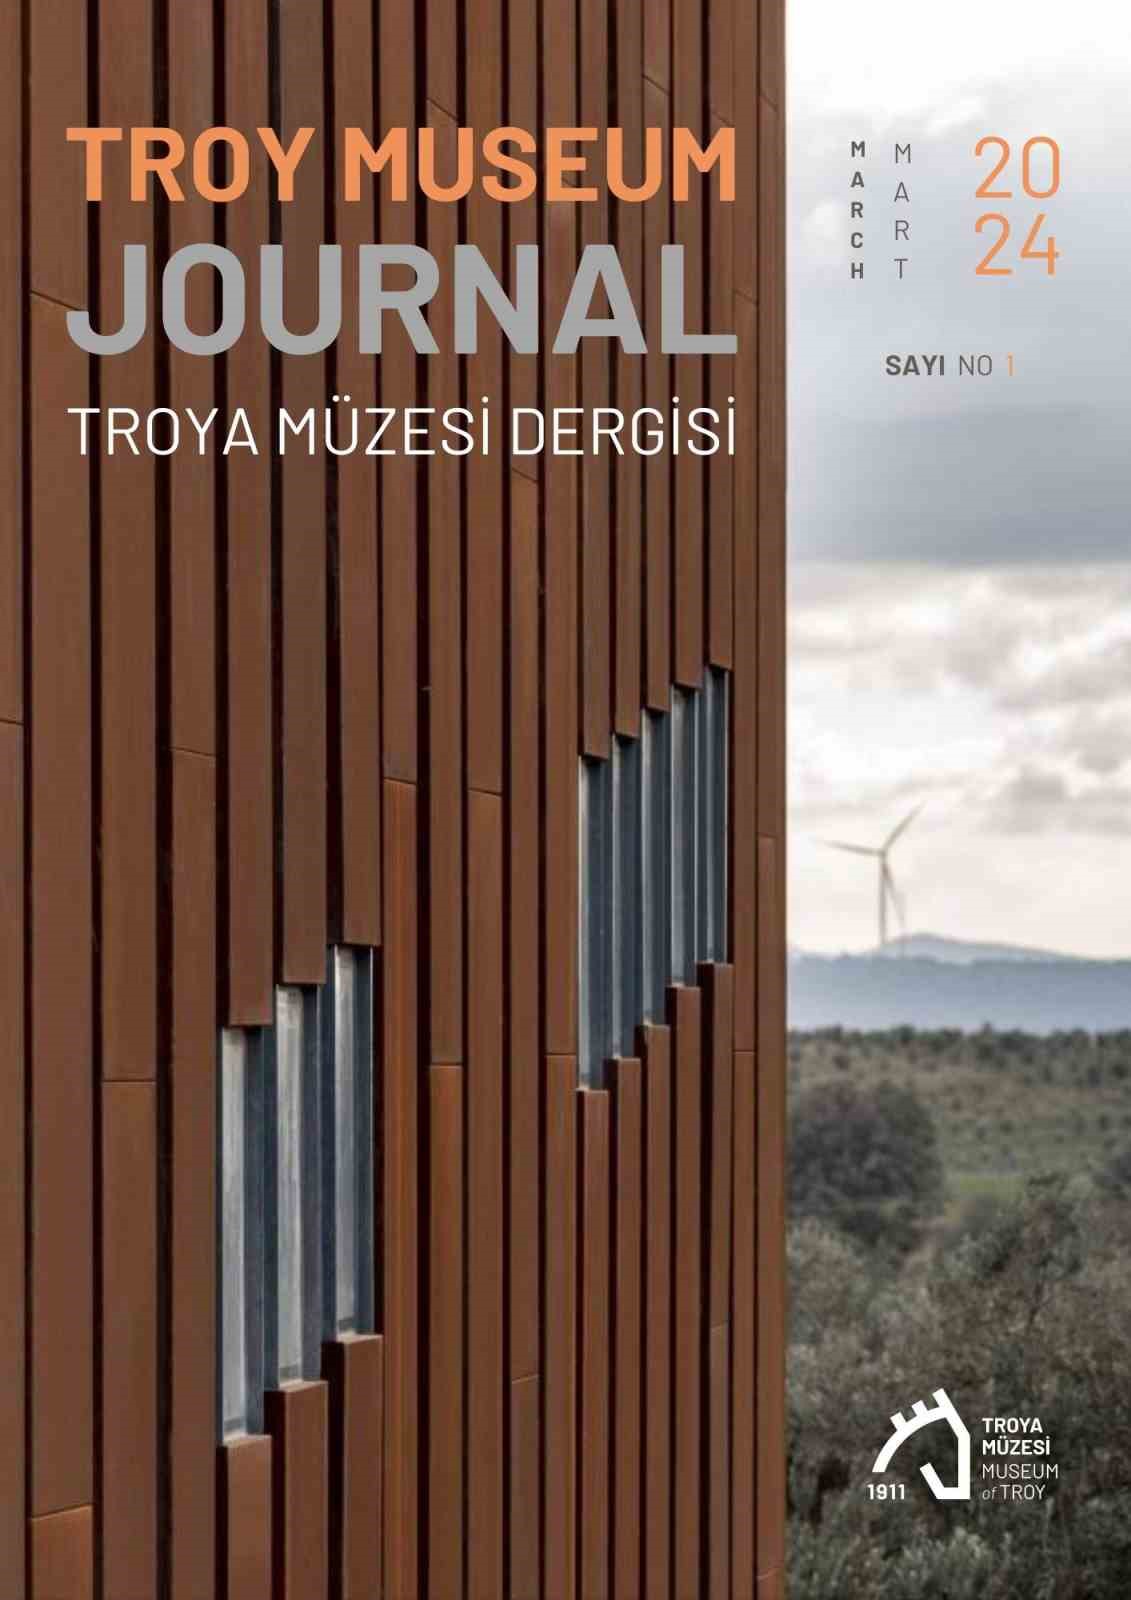 turkiyenin ilk muze dergisi troy museum journal yayin hayatina basladi 10 KM7hKttL